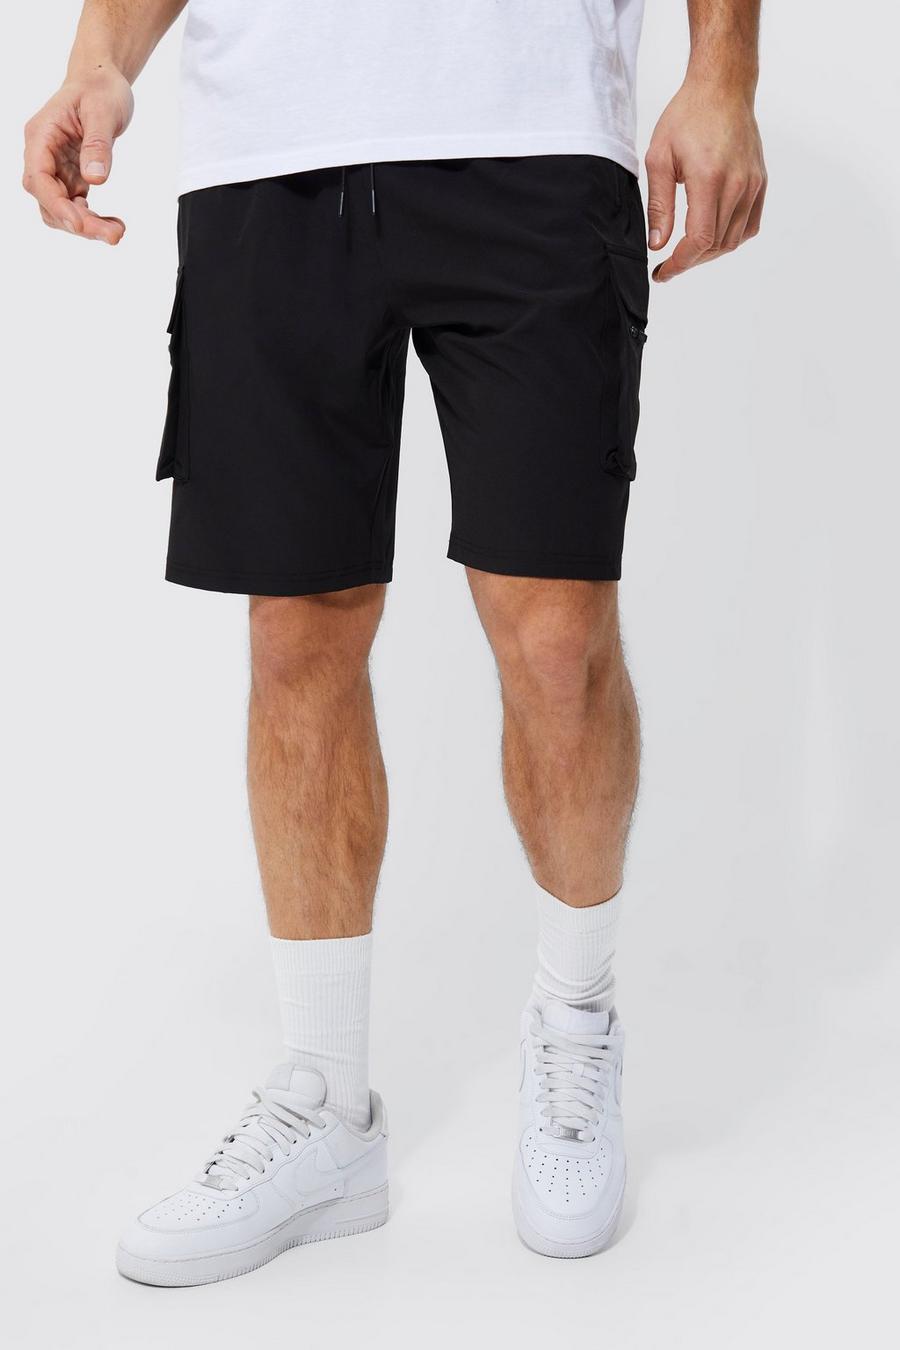 Tall Cargo-Shorts mit 4-Way Stretch und elastischem Bund, Black